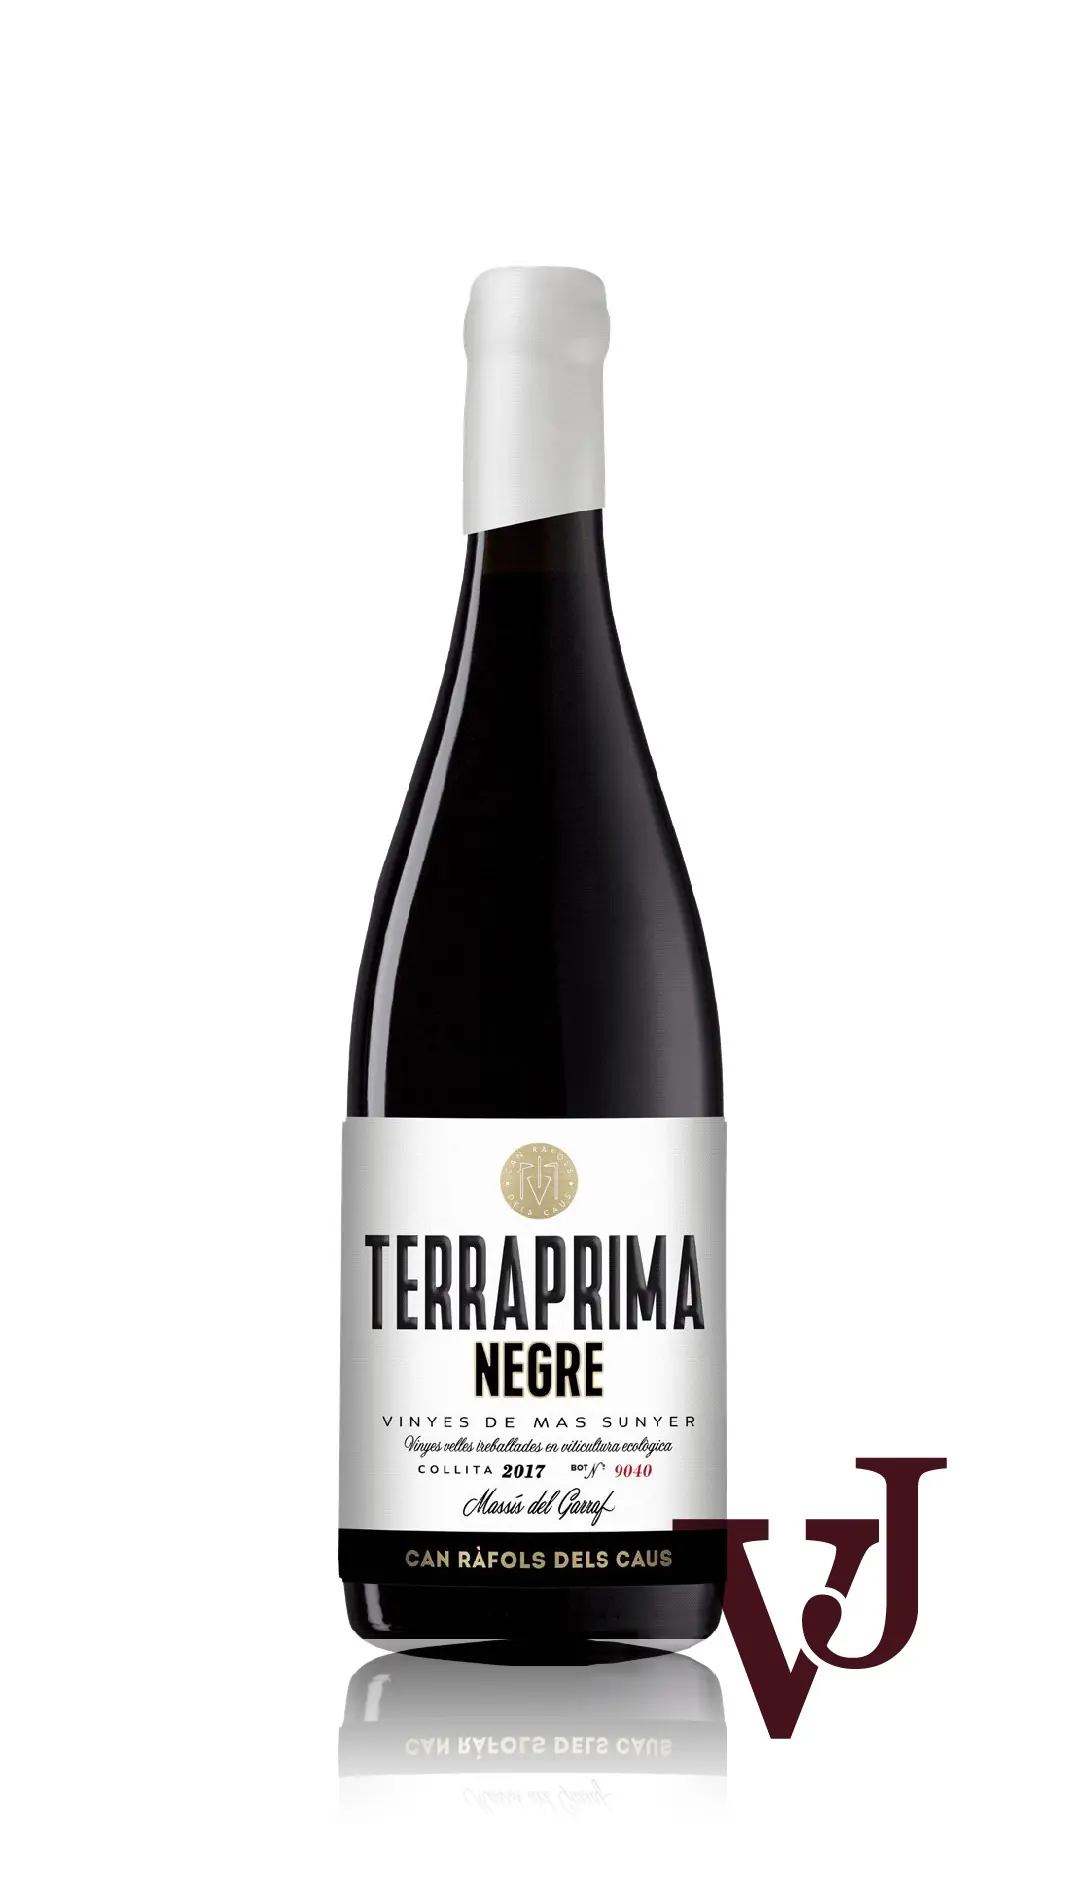 Rött Vin - Terraprima Negre 2017 artikel nummer 5263501 från producenten Can Rafols dels Caus från Spanien - Vinjournalen.se